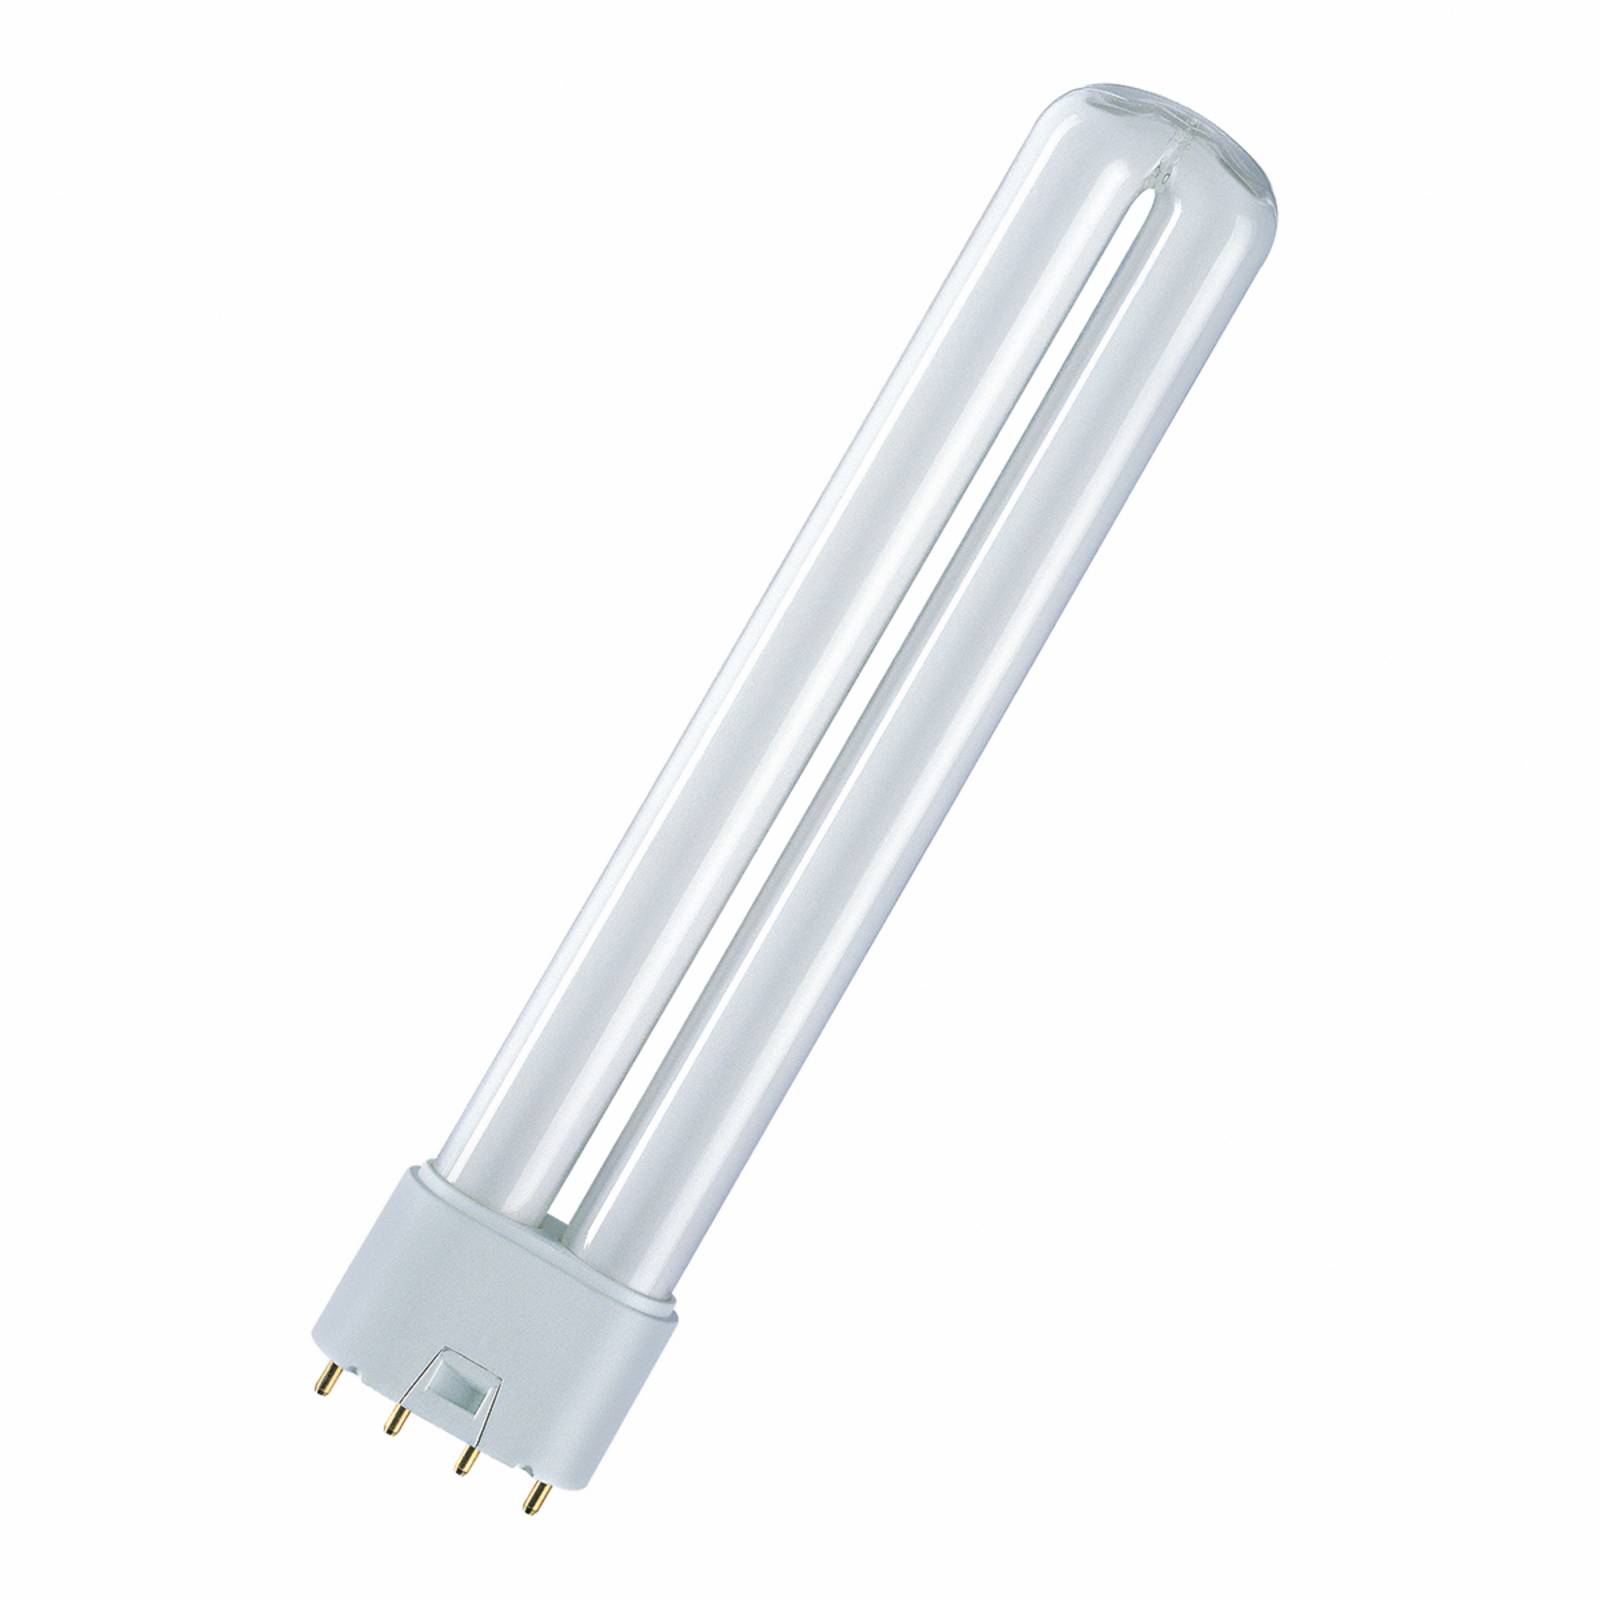 2G11 18W/840 Ampoule fluo-compacte Dulux L